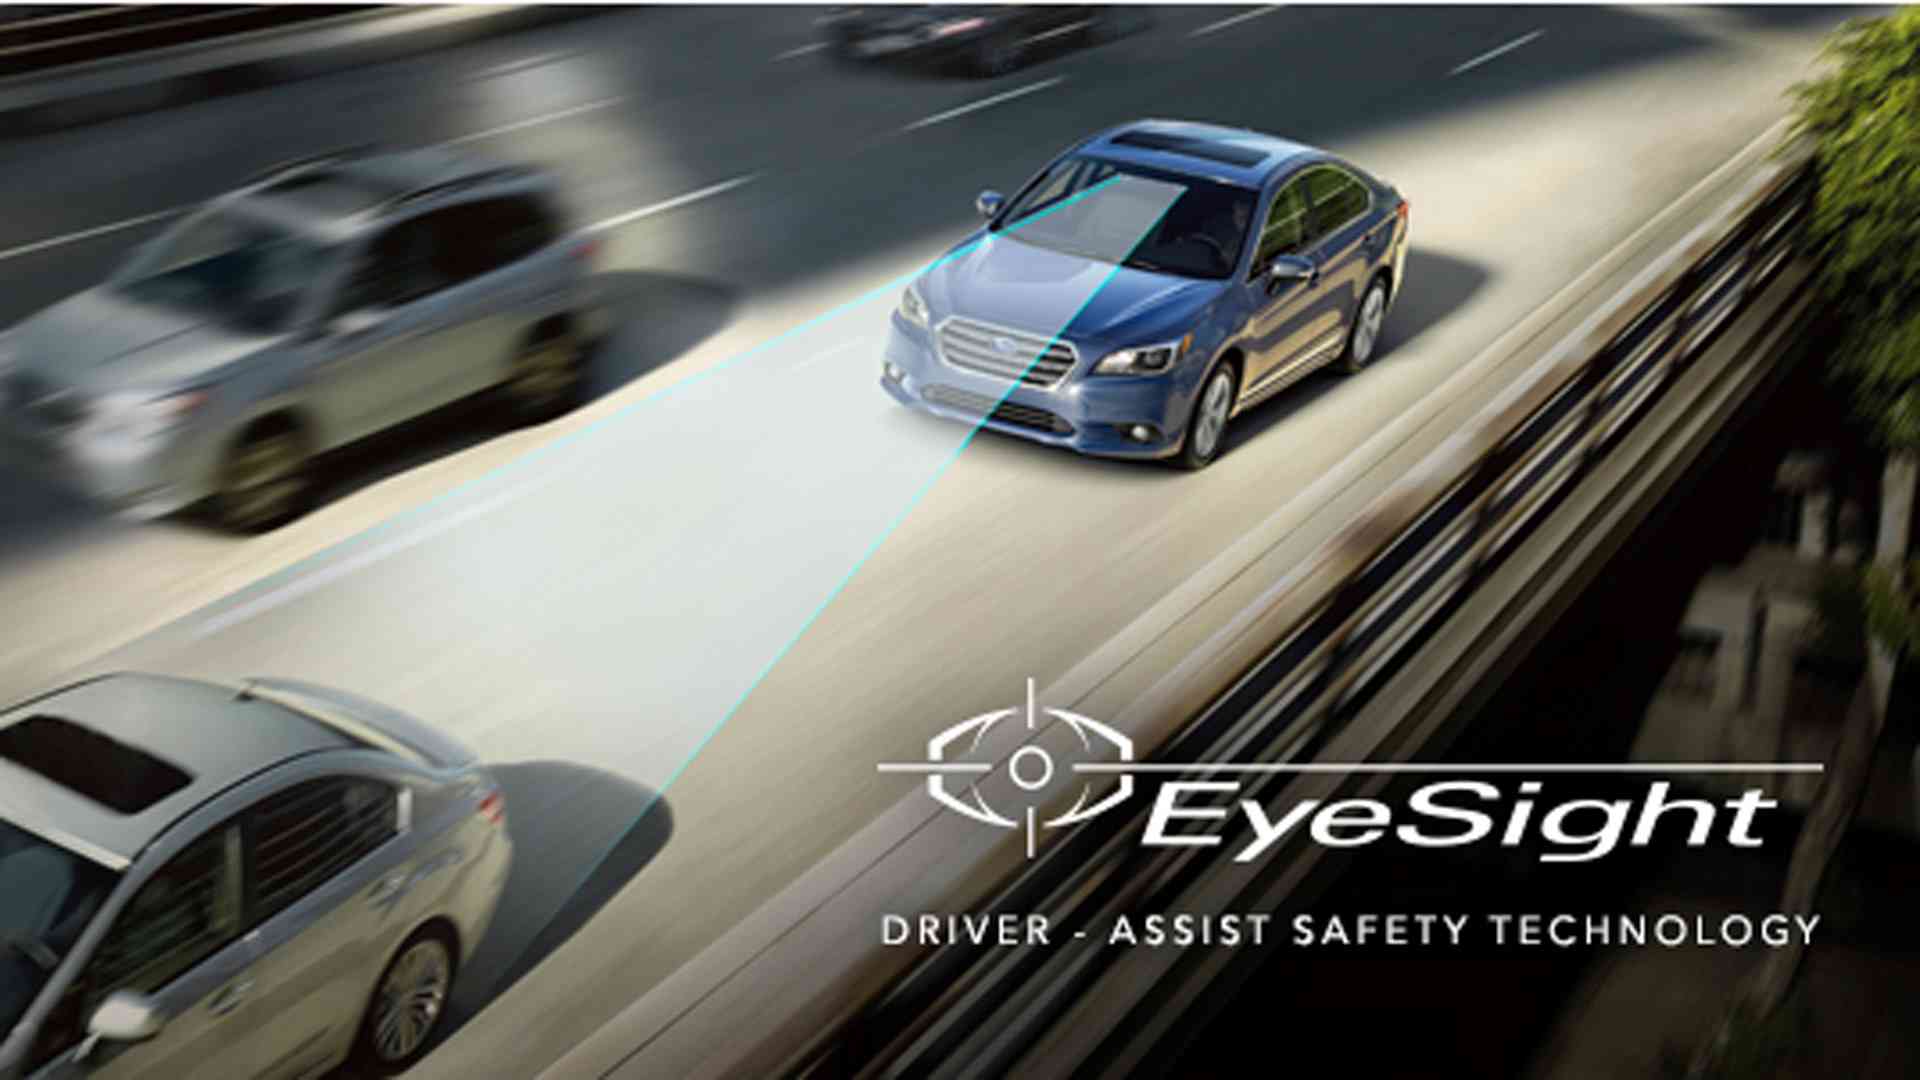 công nghệ an toàn EyeSight